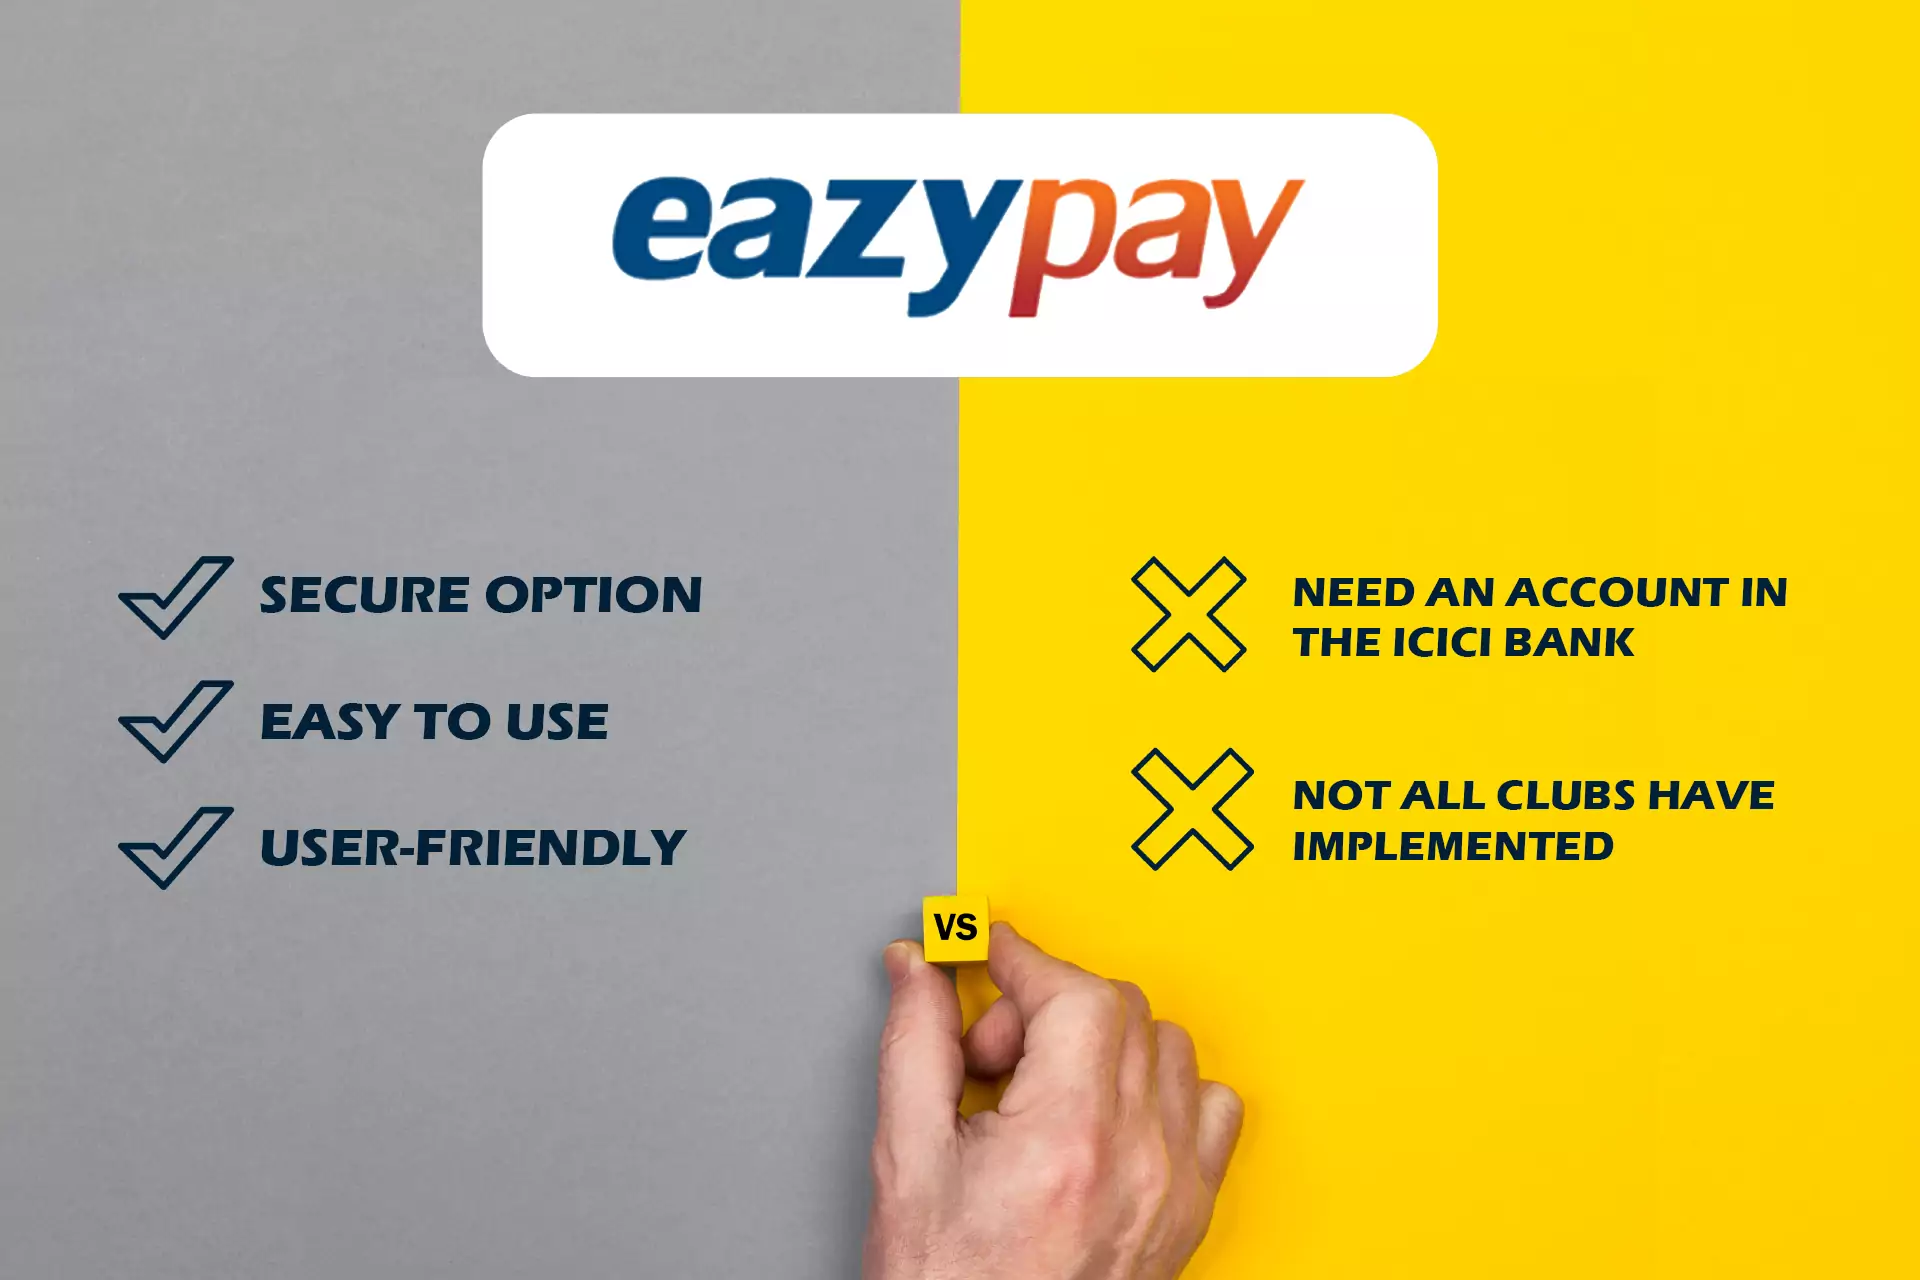 पंजीकरण से पहले Eazypay का उपयोग करने के पेशेवरों और विपक्षों के बारे में सोचें।